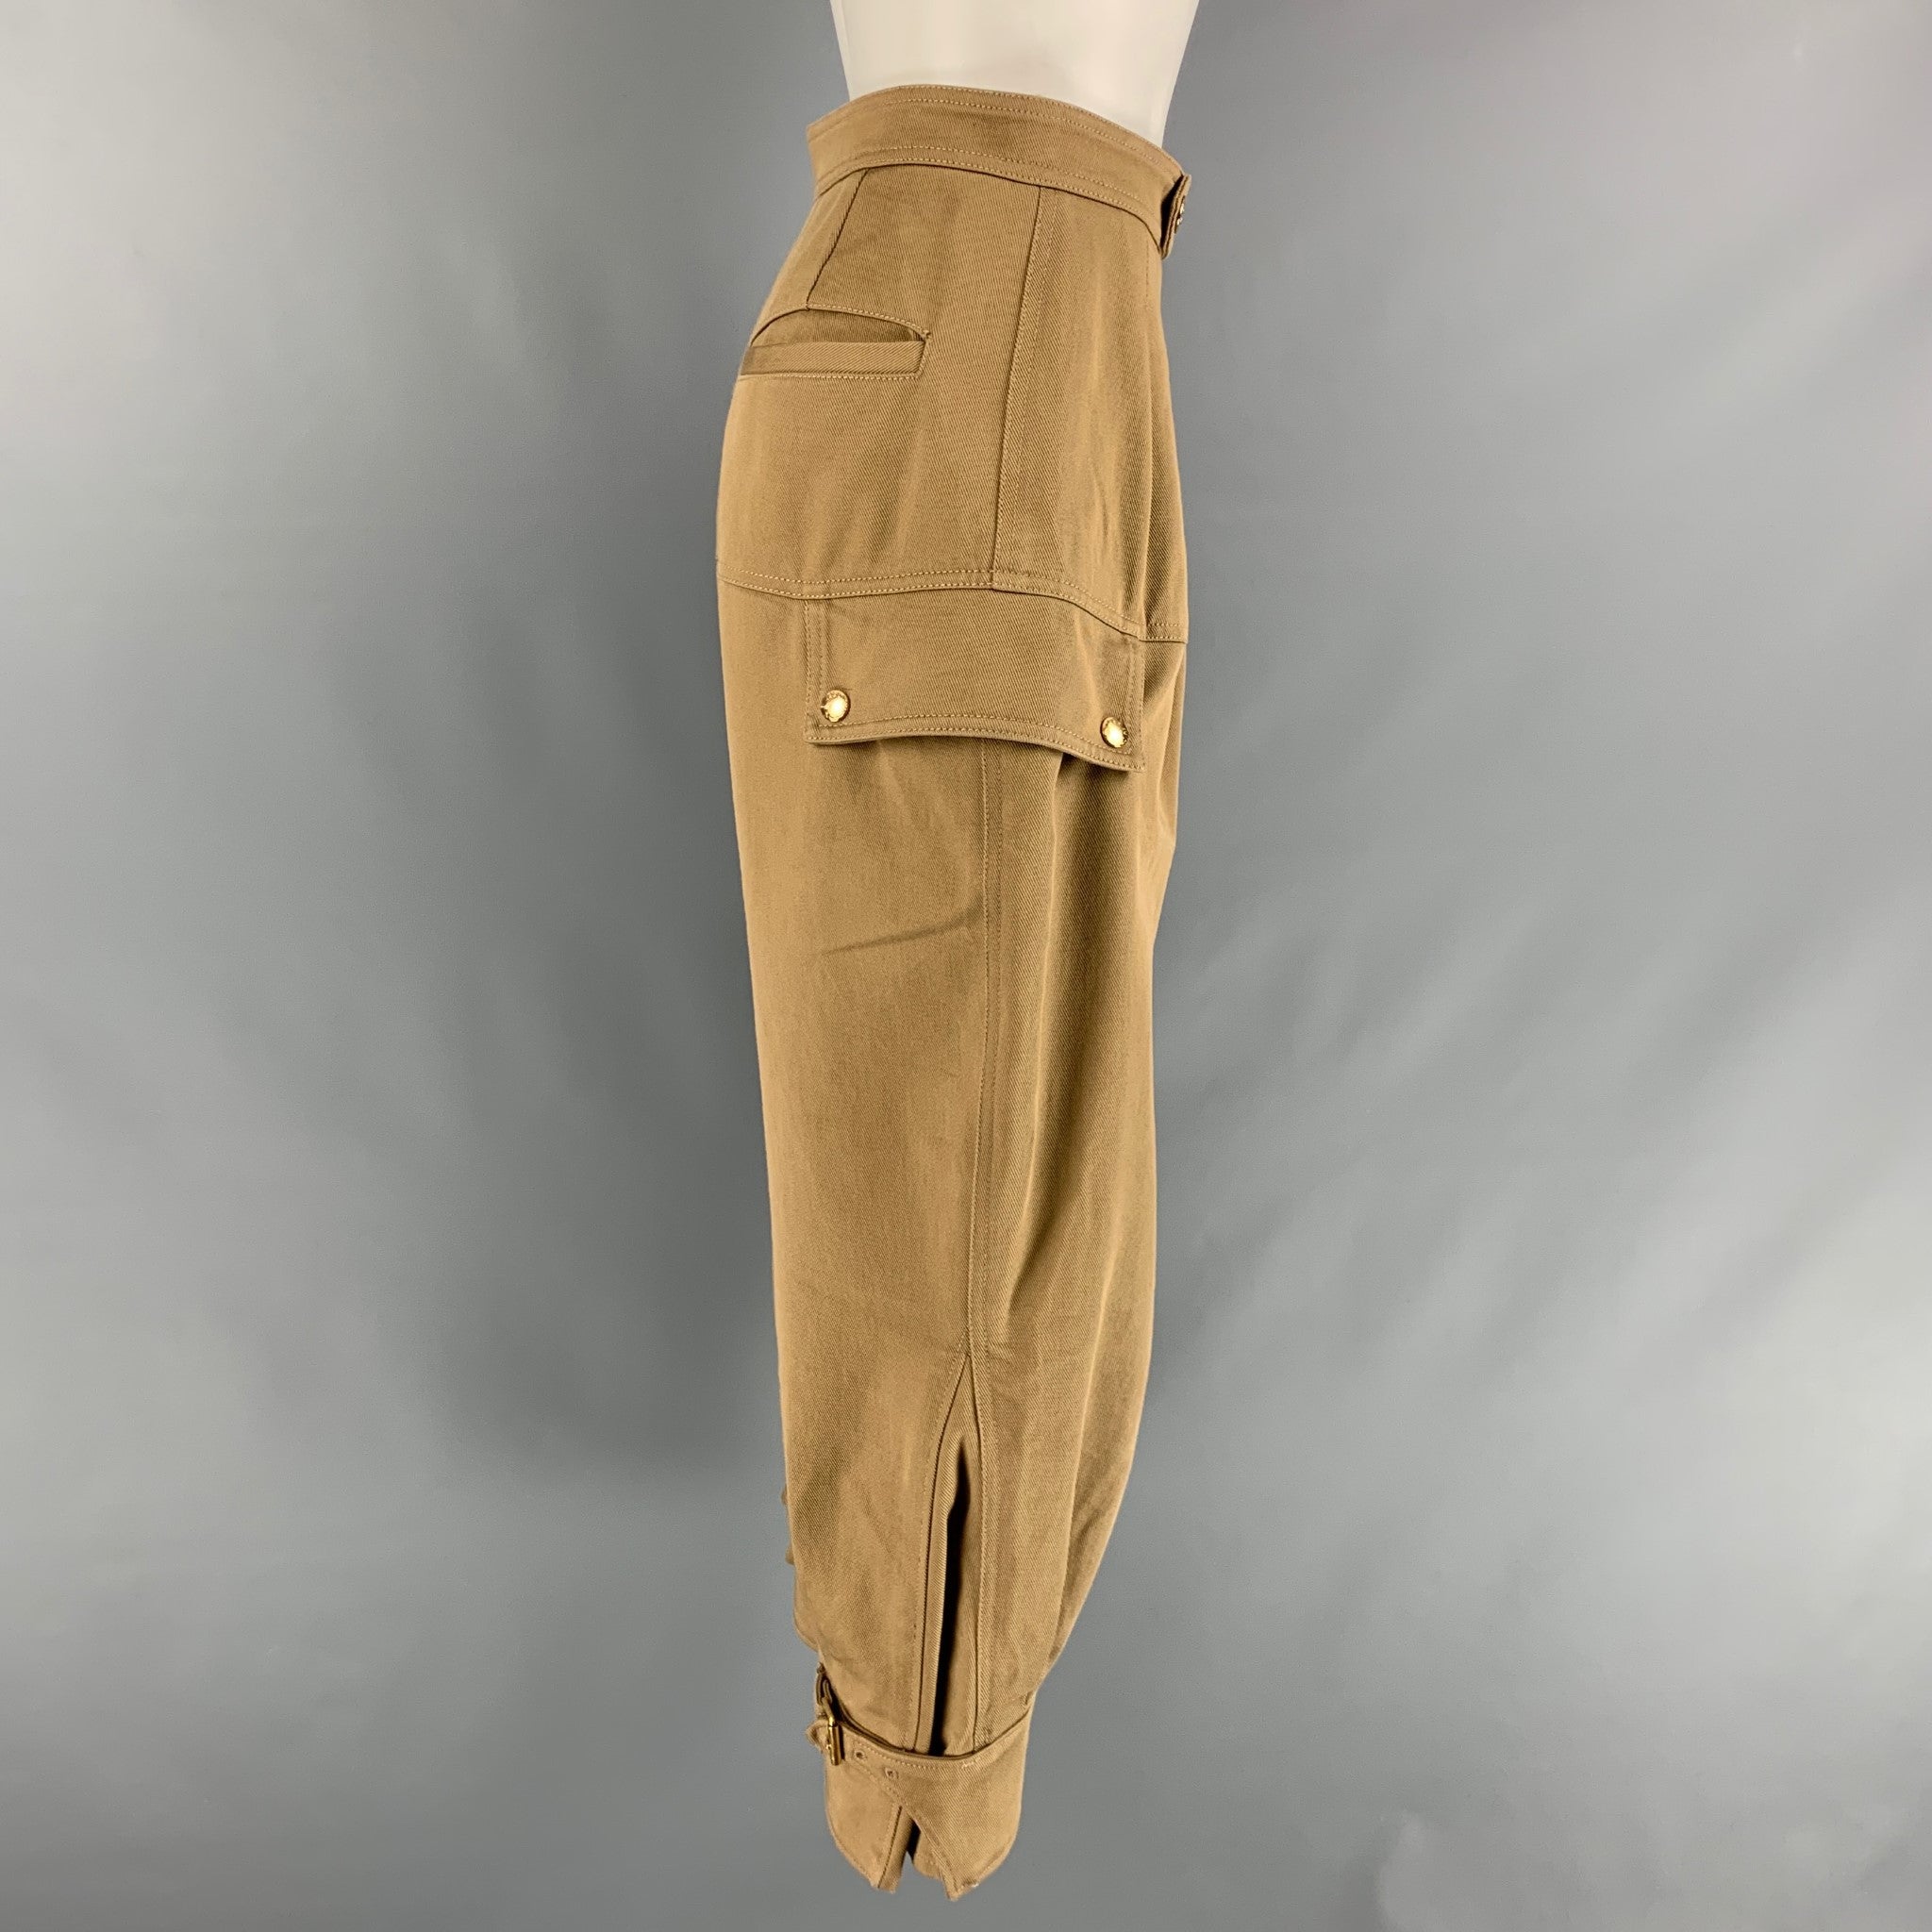 LOUIS VUITTON Size 6.5 Black Patches Leather Metropolis Ranger Boots – Sui  Generis Designer Consignment